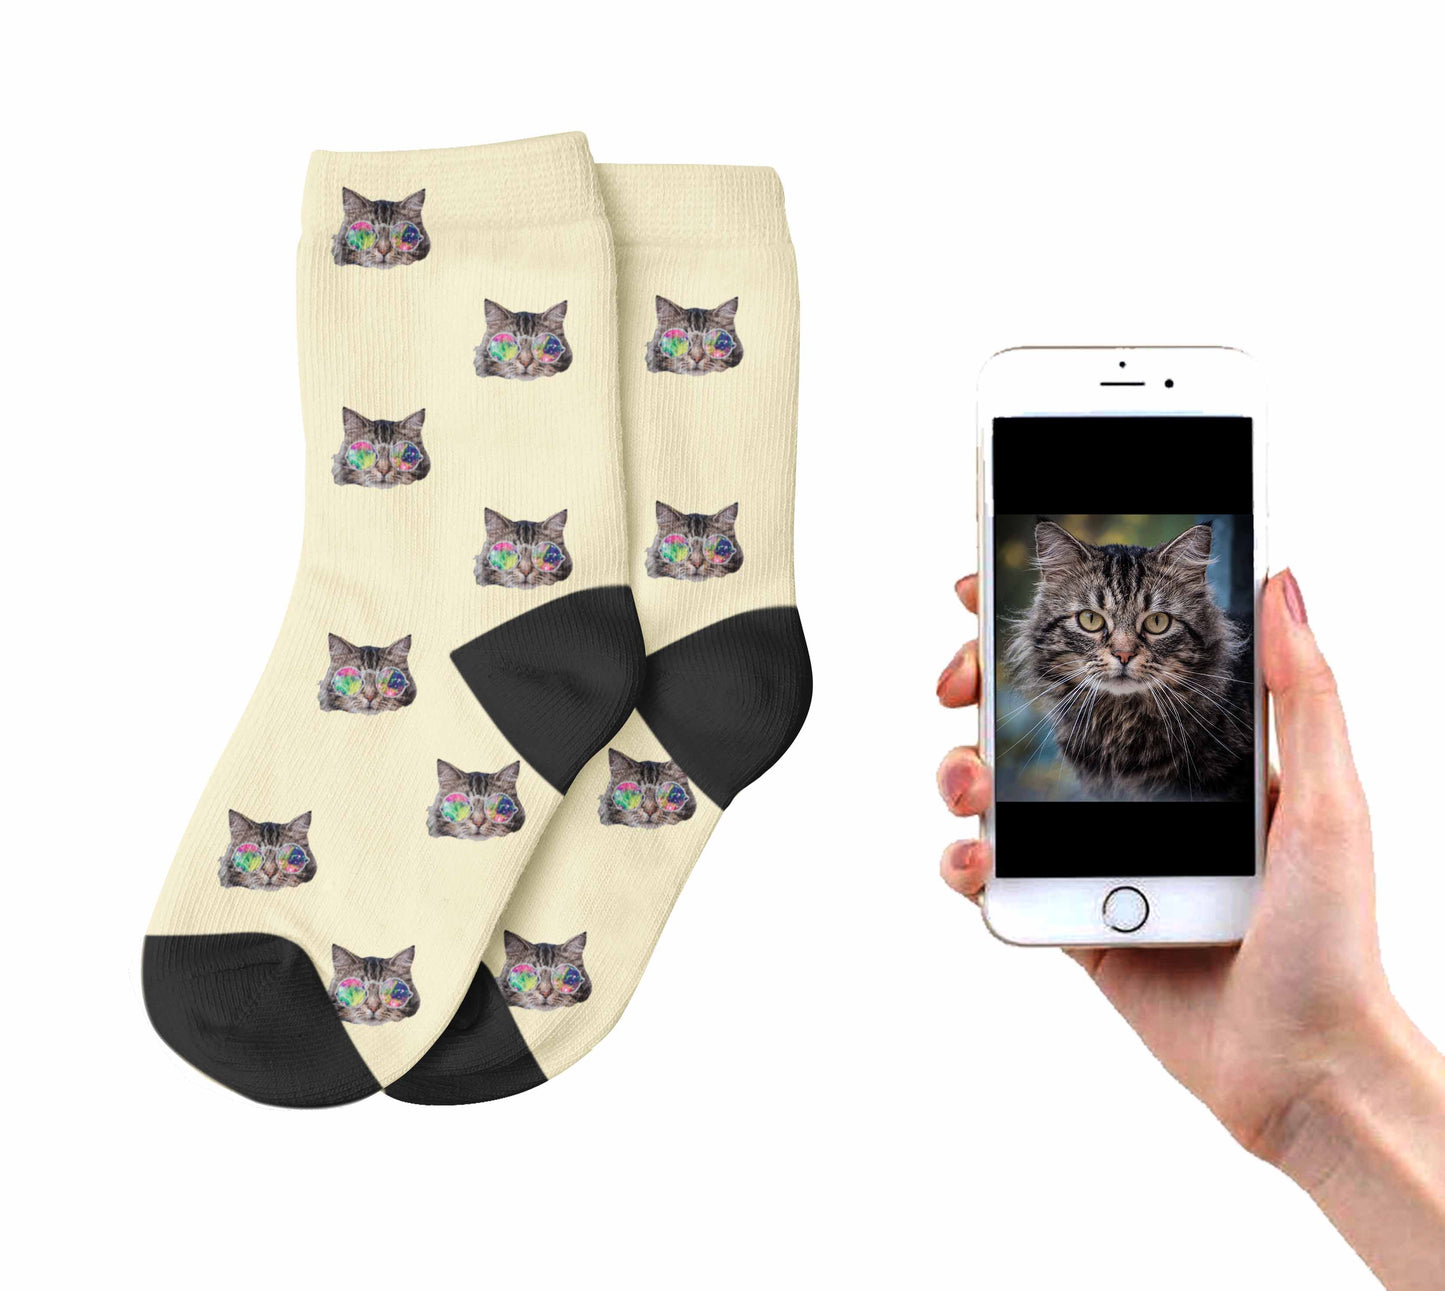 
                  
                    Cool Cat Socks For Kids
                  
                